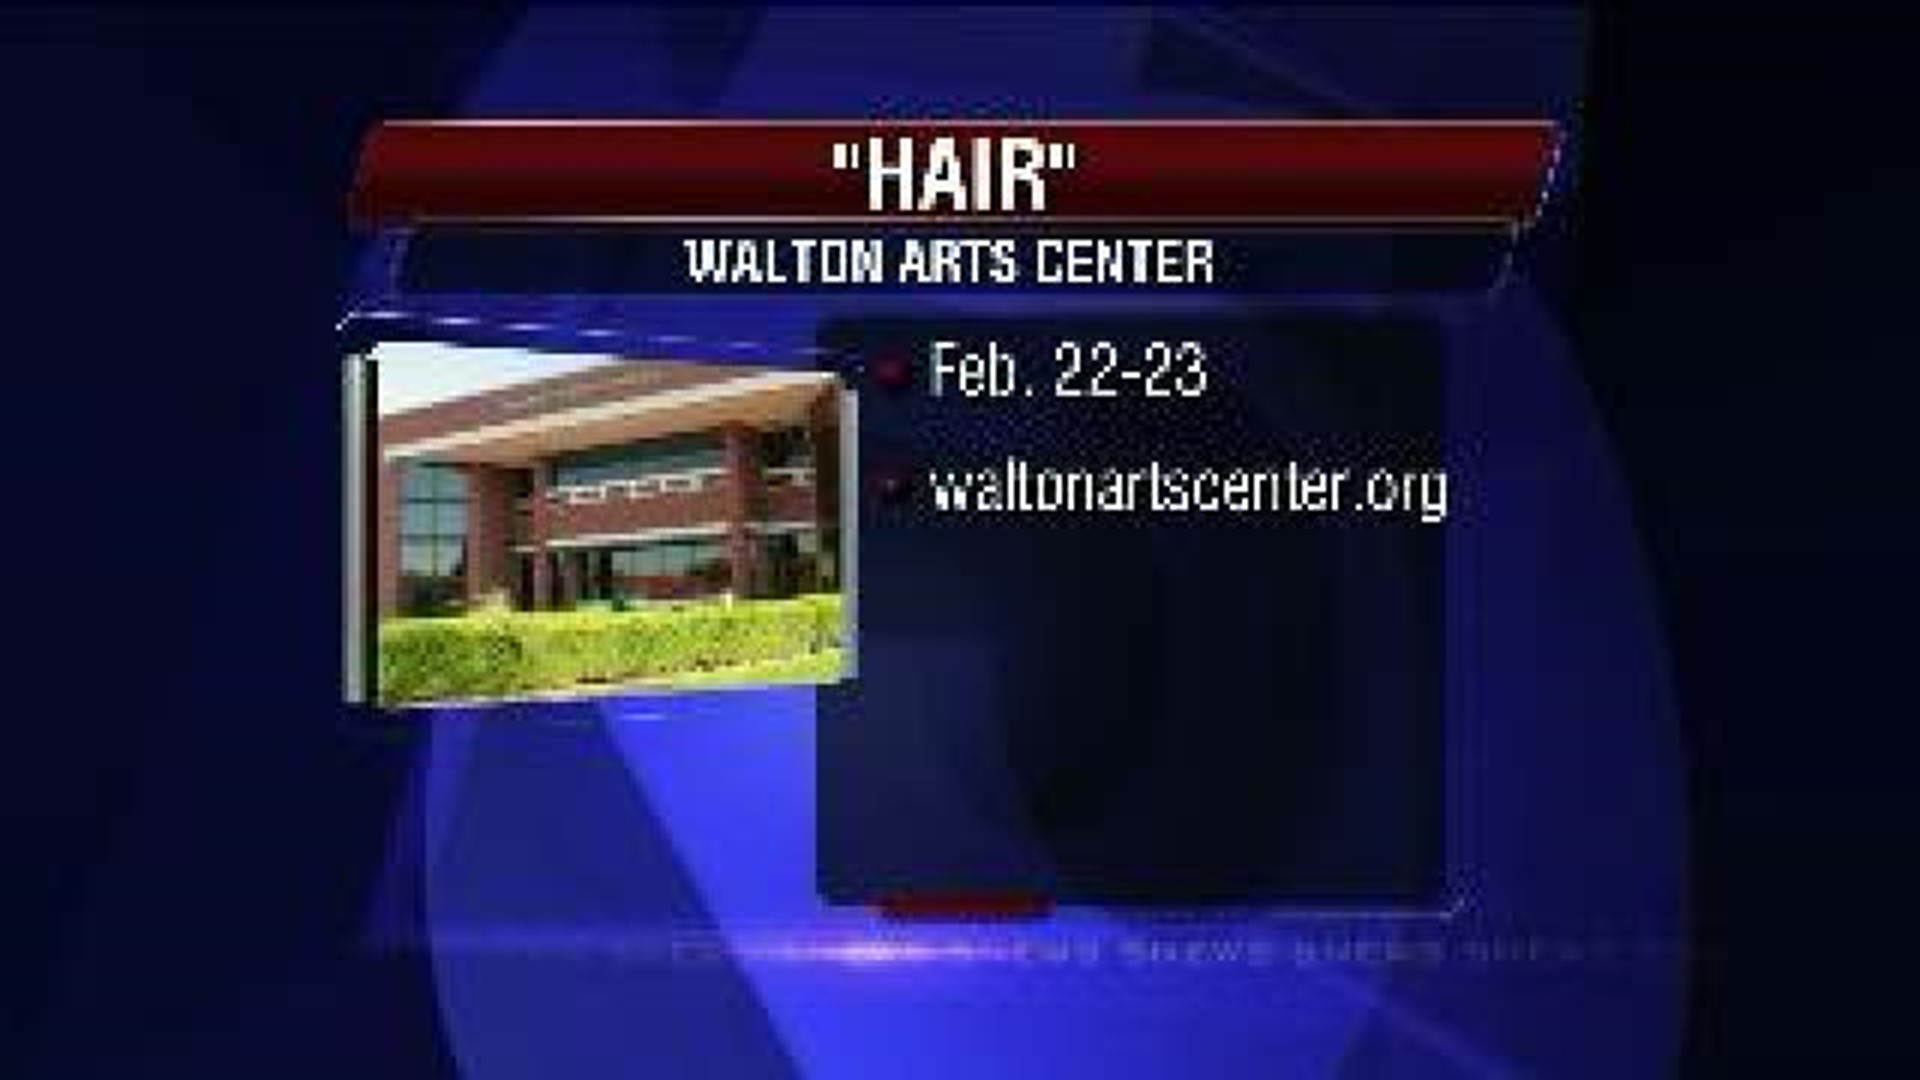 "Hair" - The Walton Arts Center